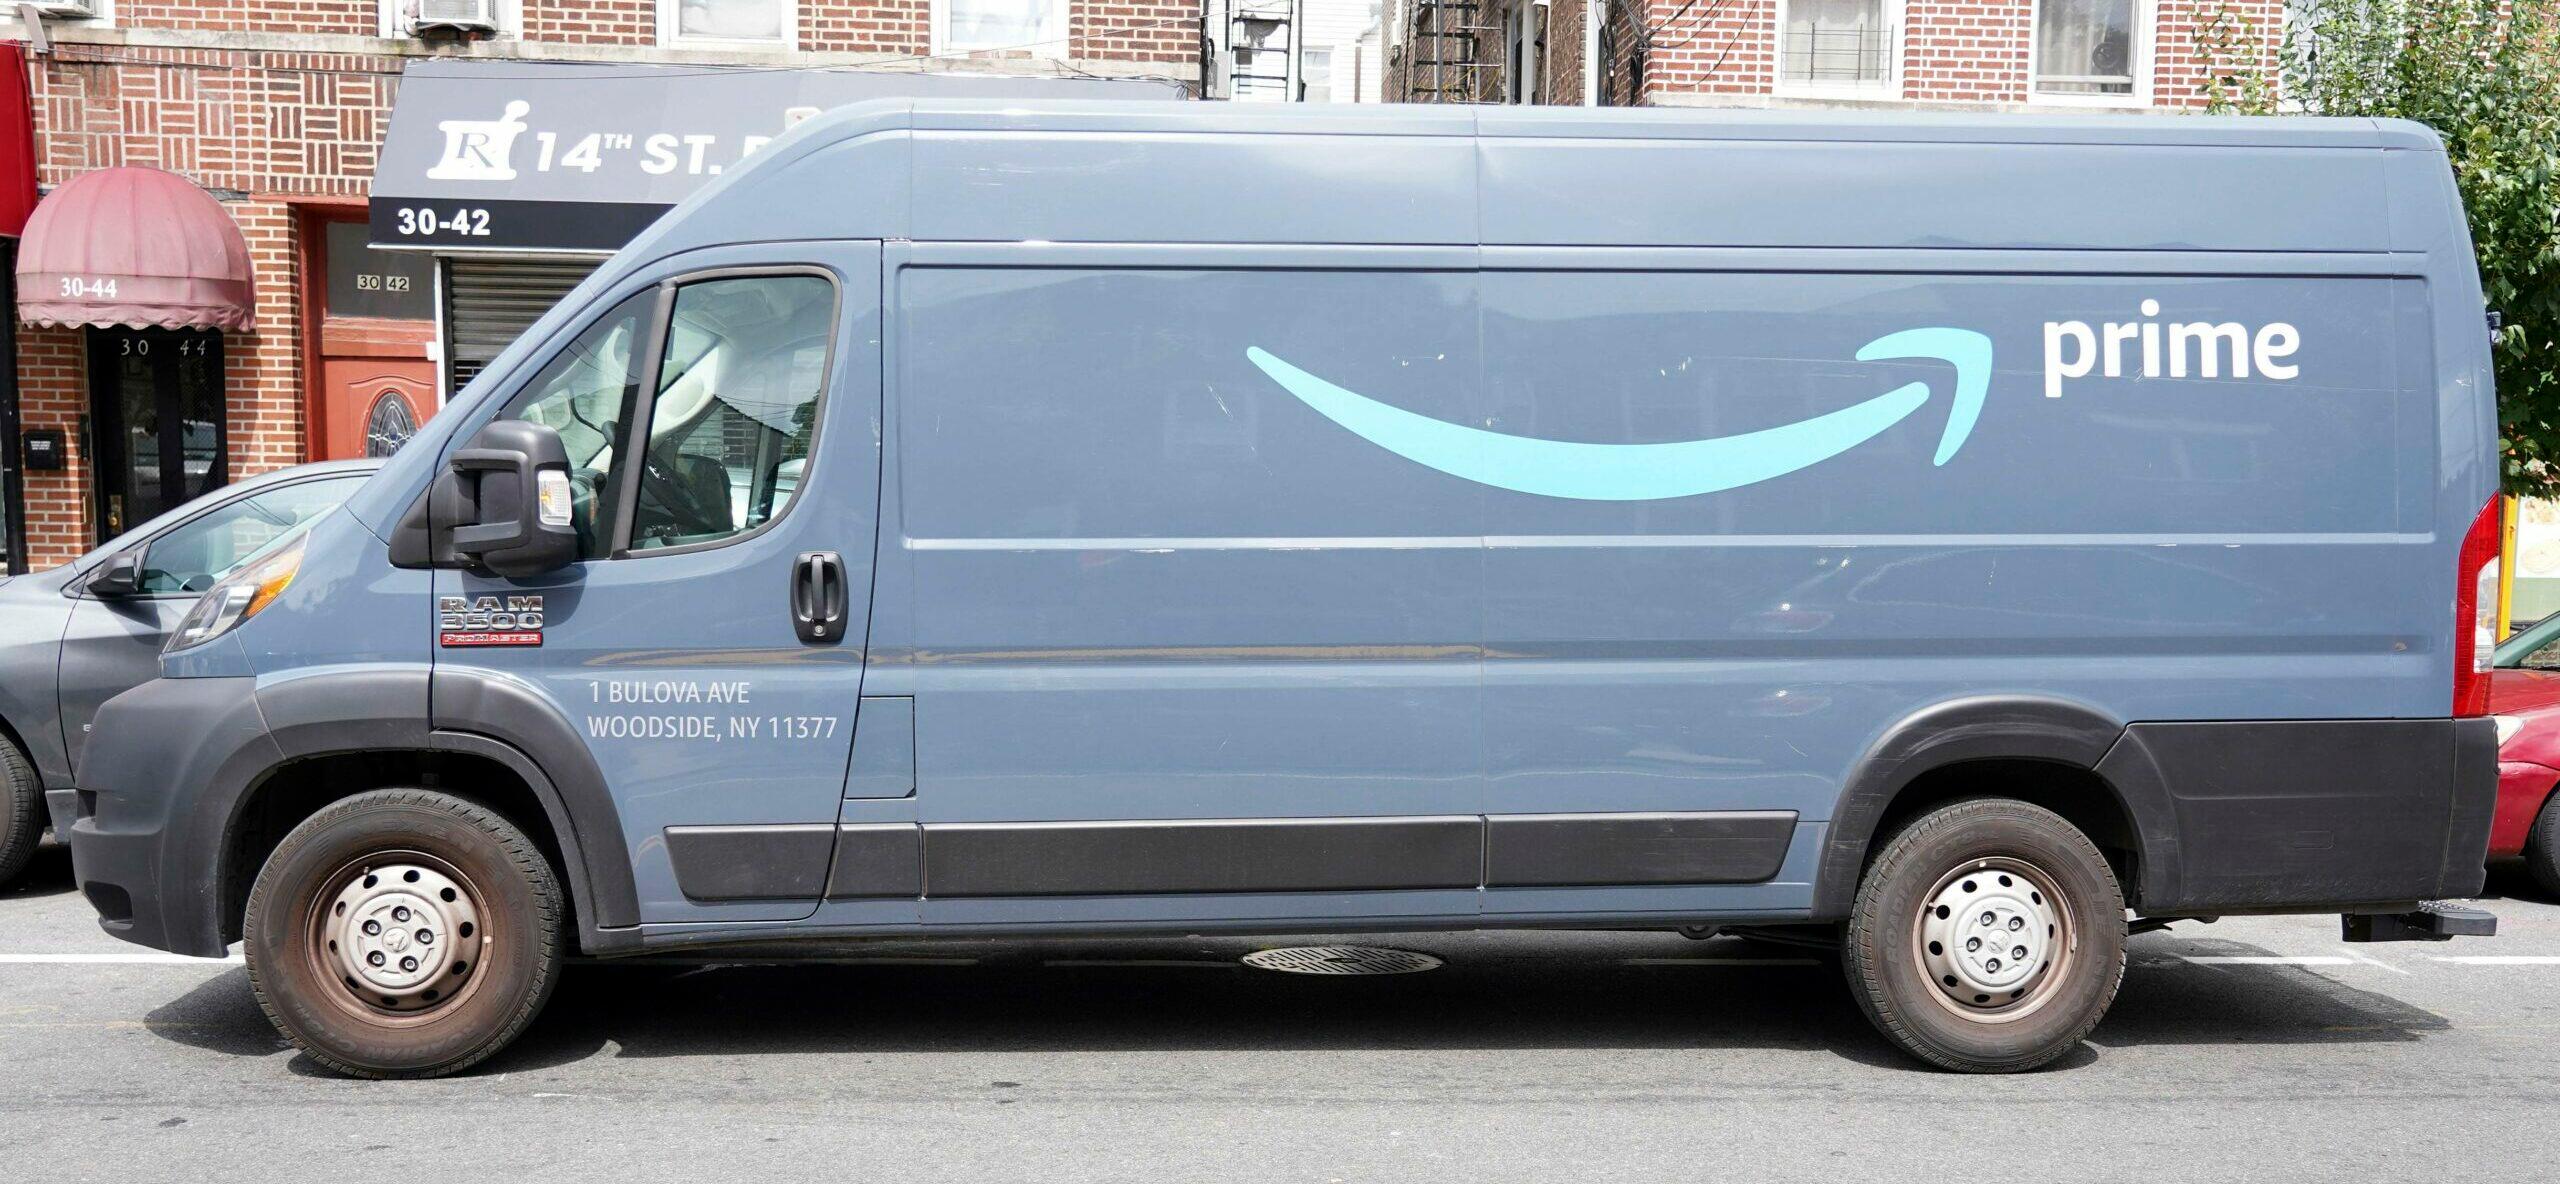 Amazon Prime Truck